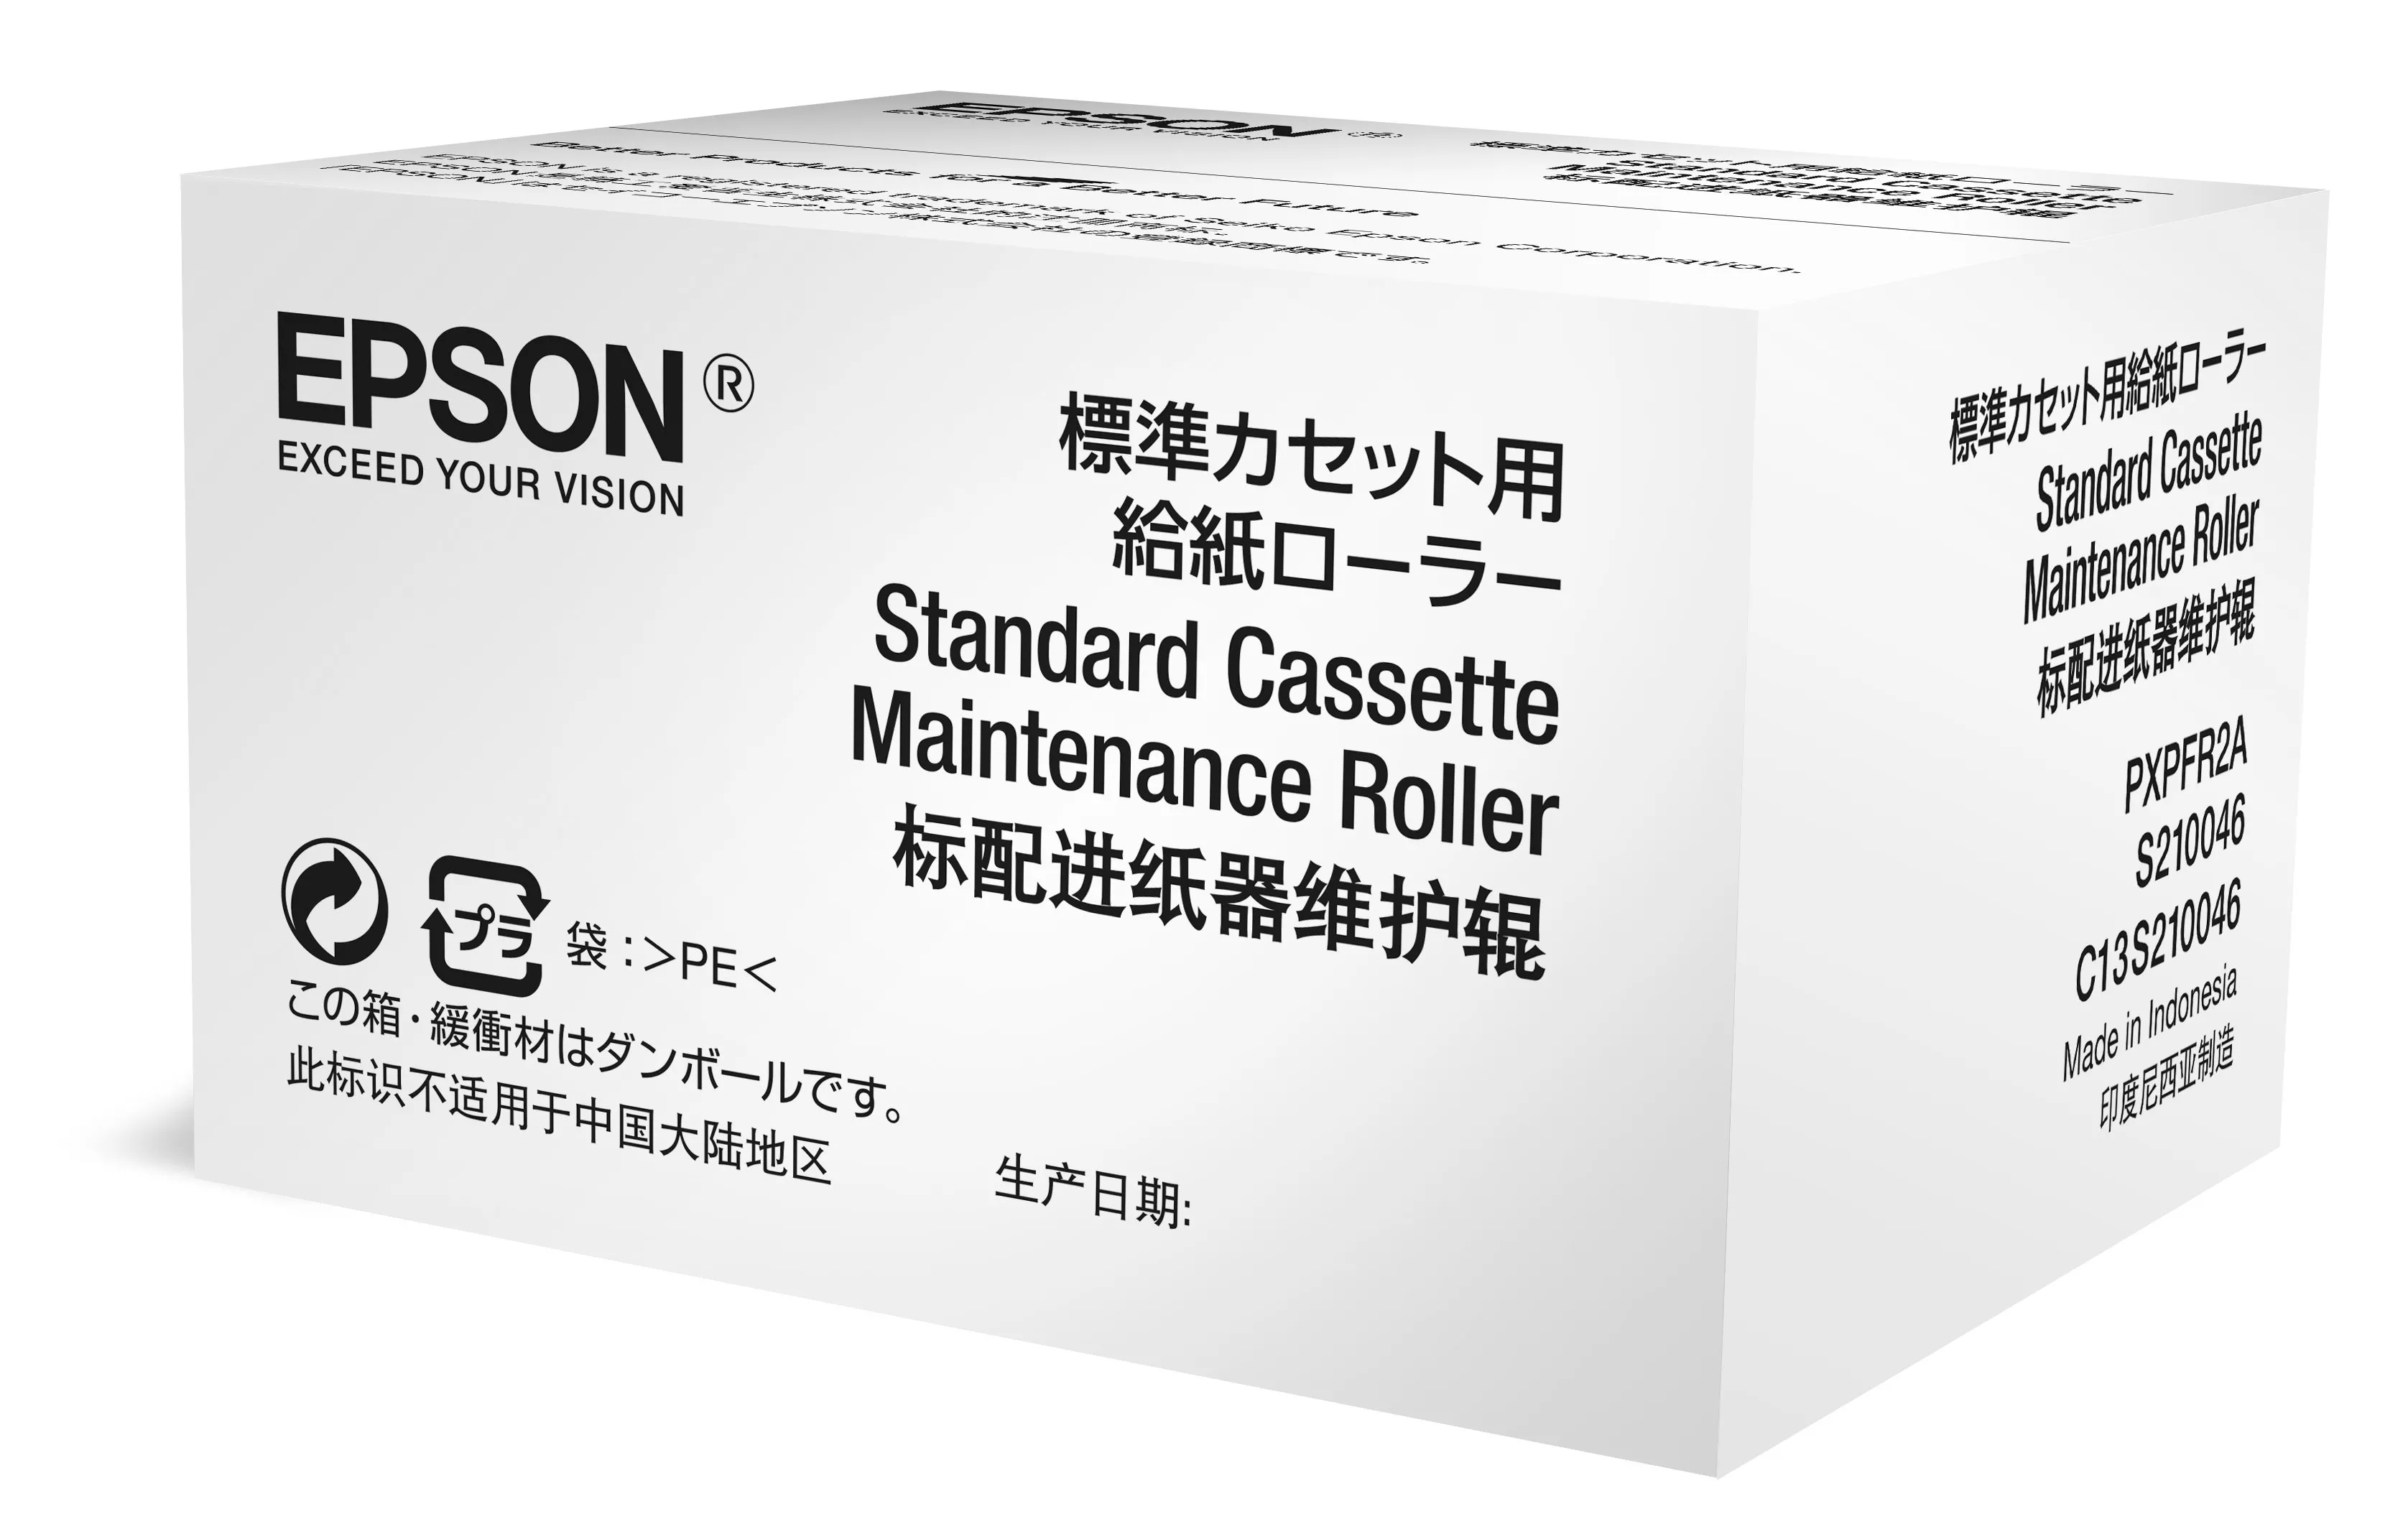 Achat Accessoires pour imprimante Epson Optional Cassette Maintenance Roller sur hello RSE